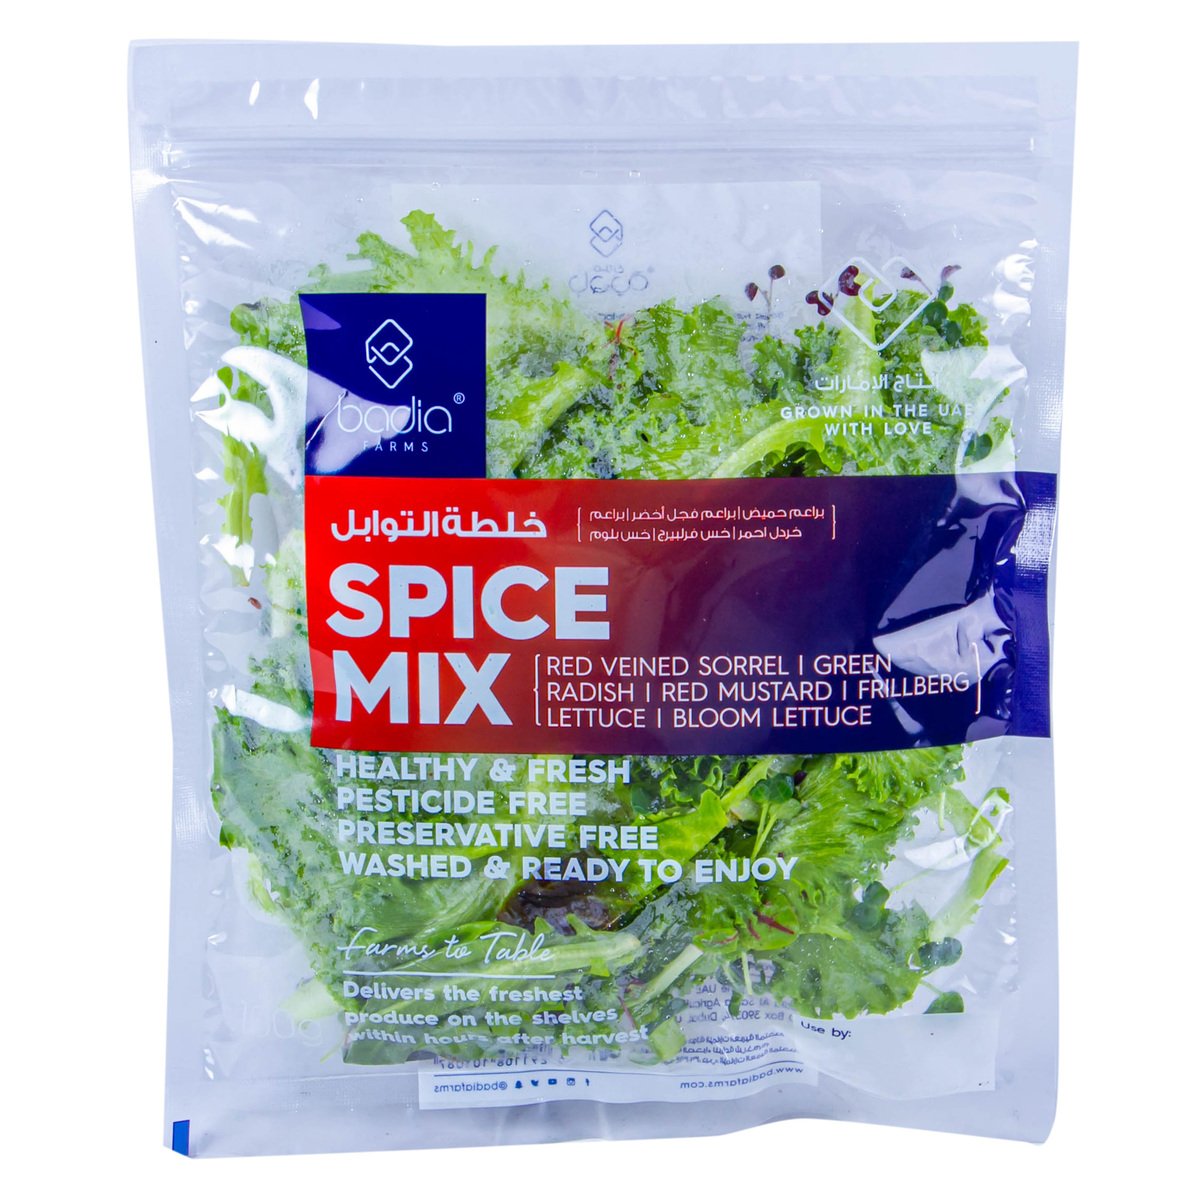 Spice Mix UAE 1 pkt